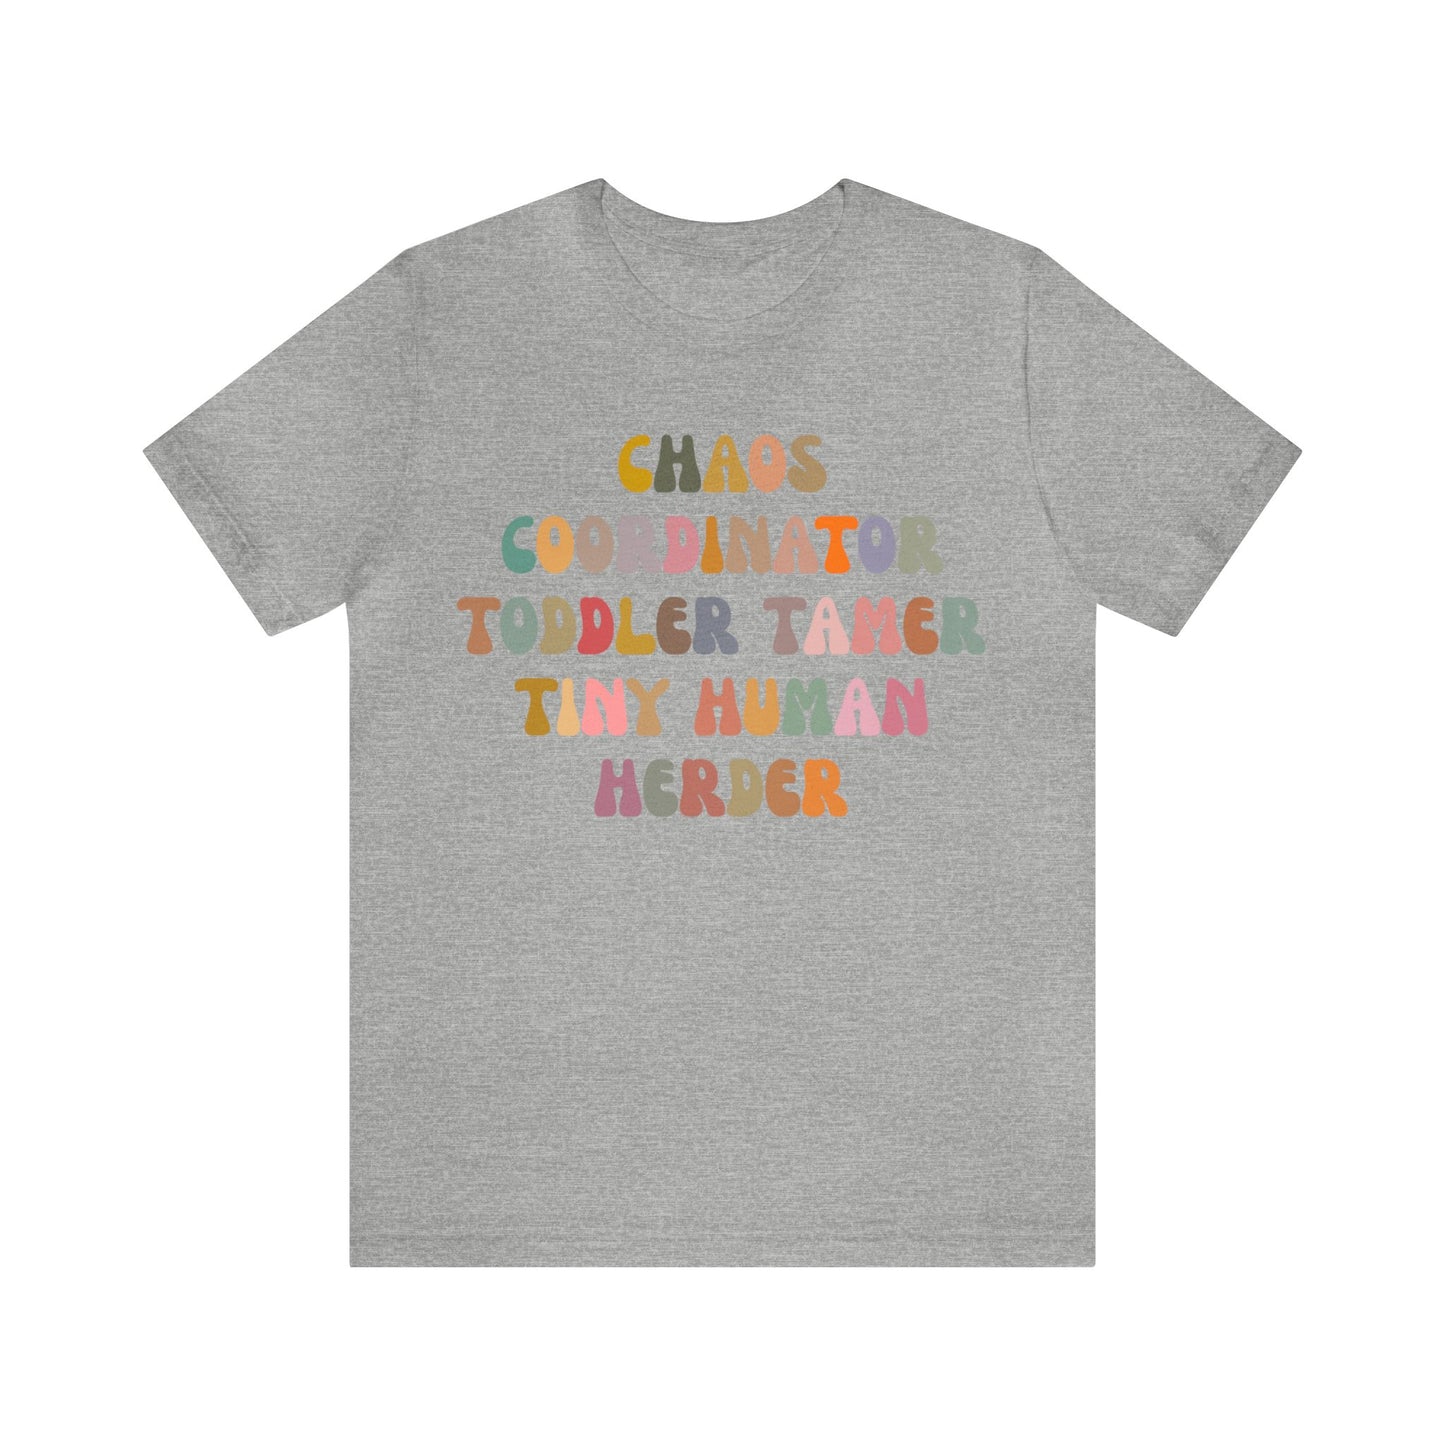 Chaos Coordinator Toddler Tamer Tiny Human Herder Shirt, Kindergarten Teacher Shirt, Toddler Shirt, Mom Shirt, Babysitter Shirt, T1283